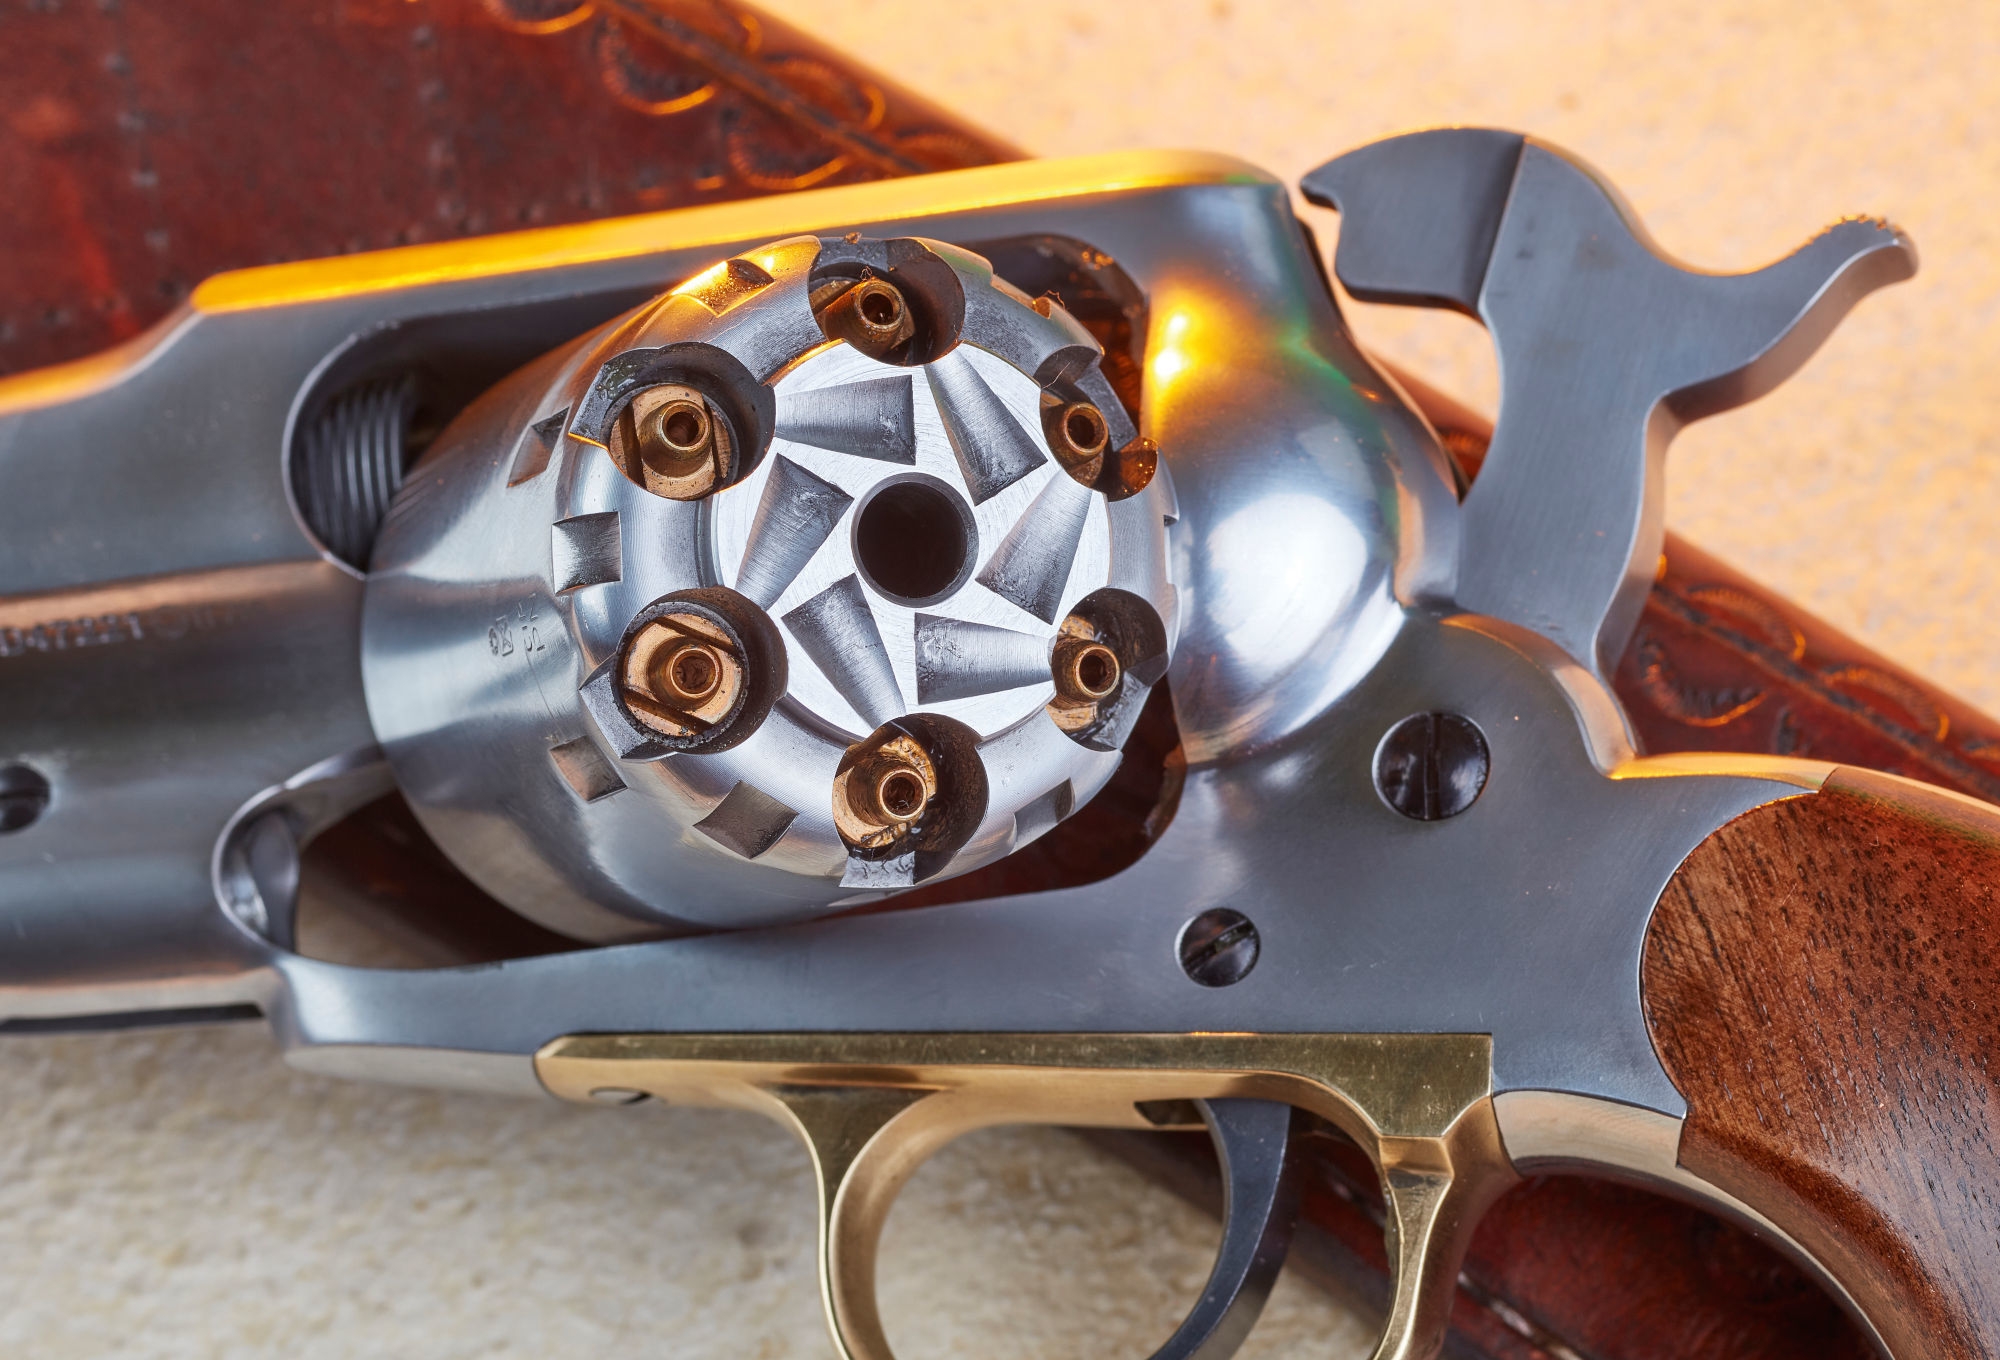 Revolver à poudre noire cal 44 Remington pattern Pedersoli Target -  Armurerie Respect The Target SARL